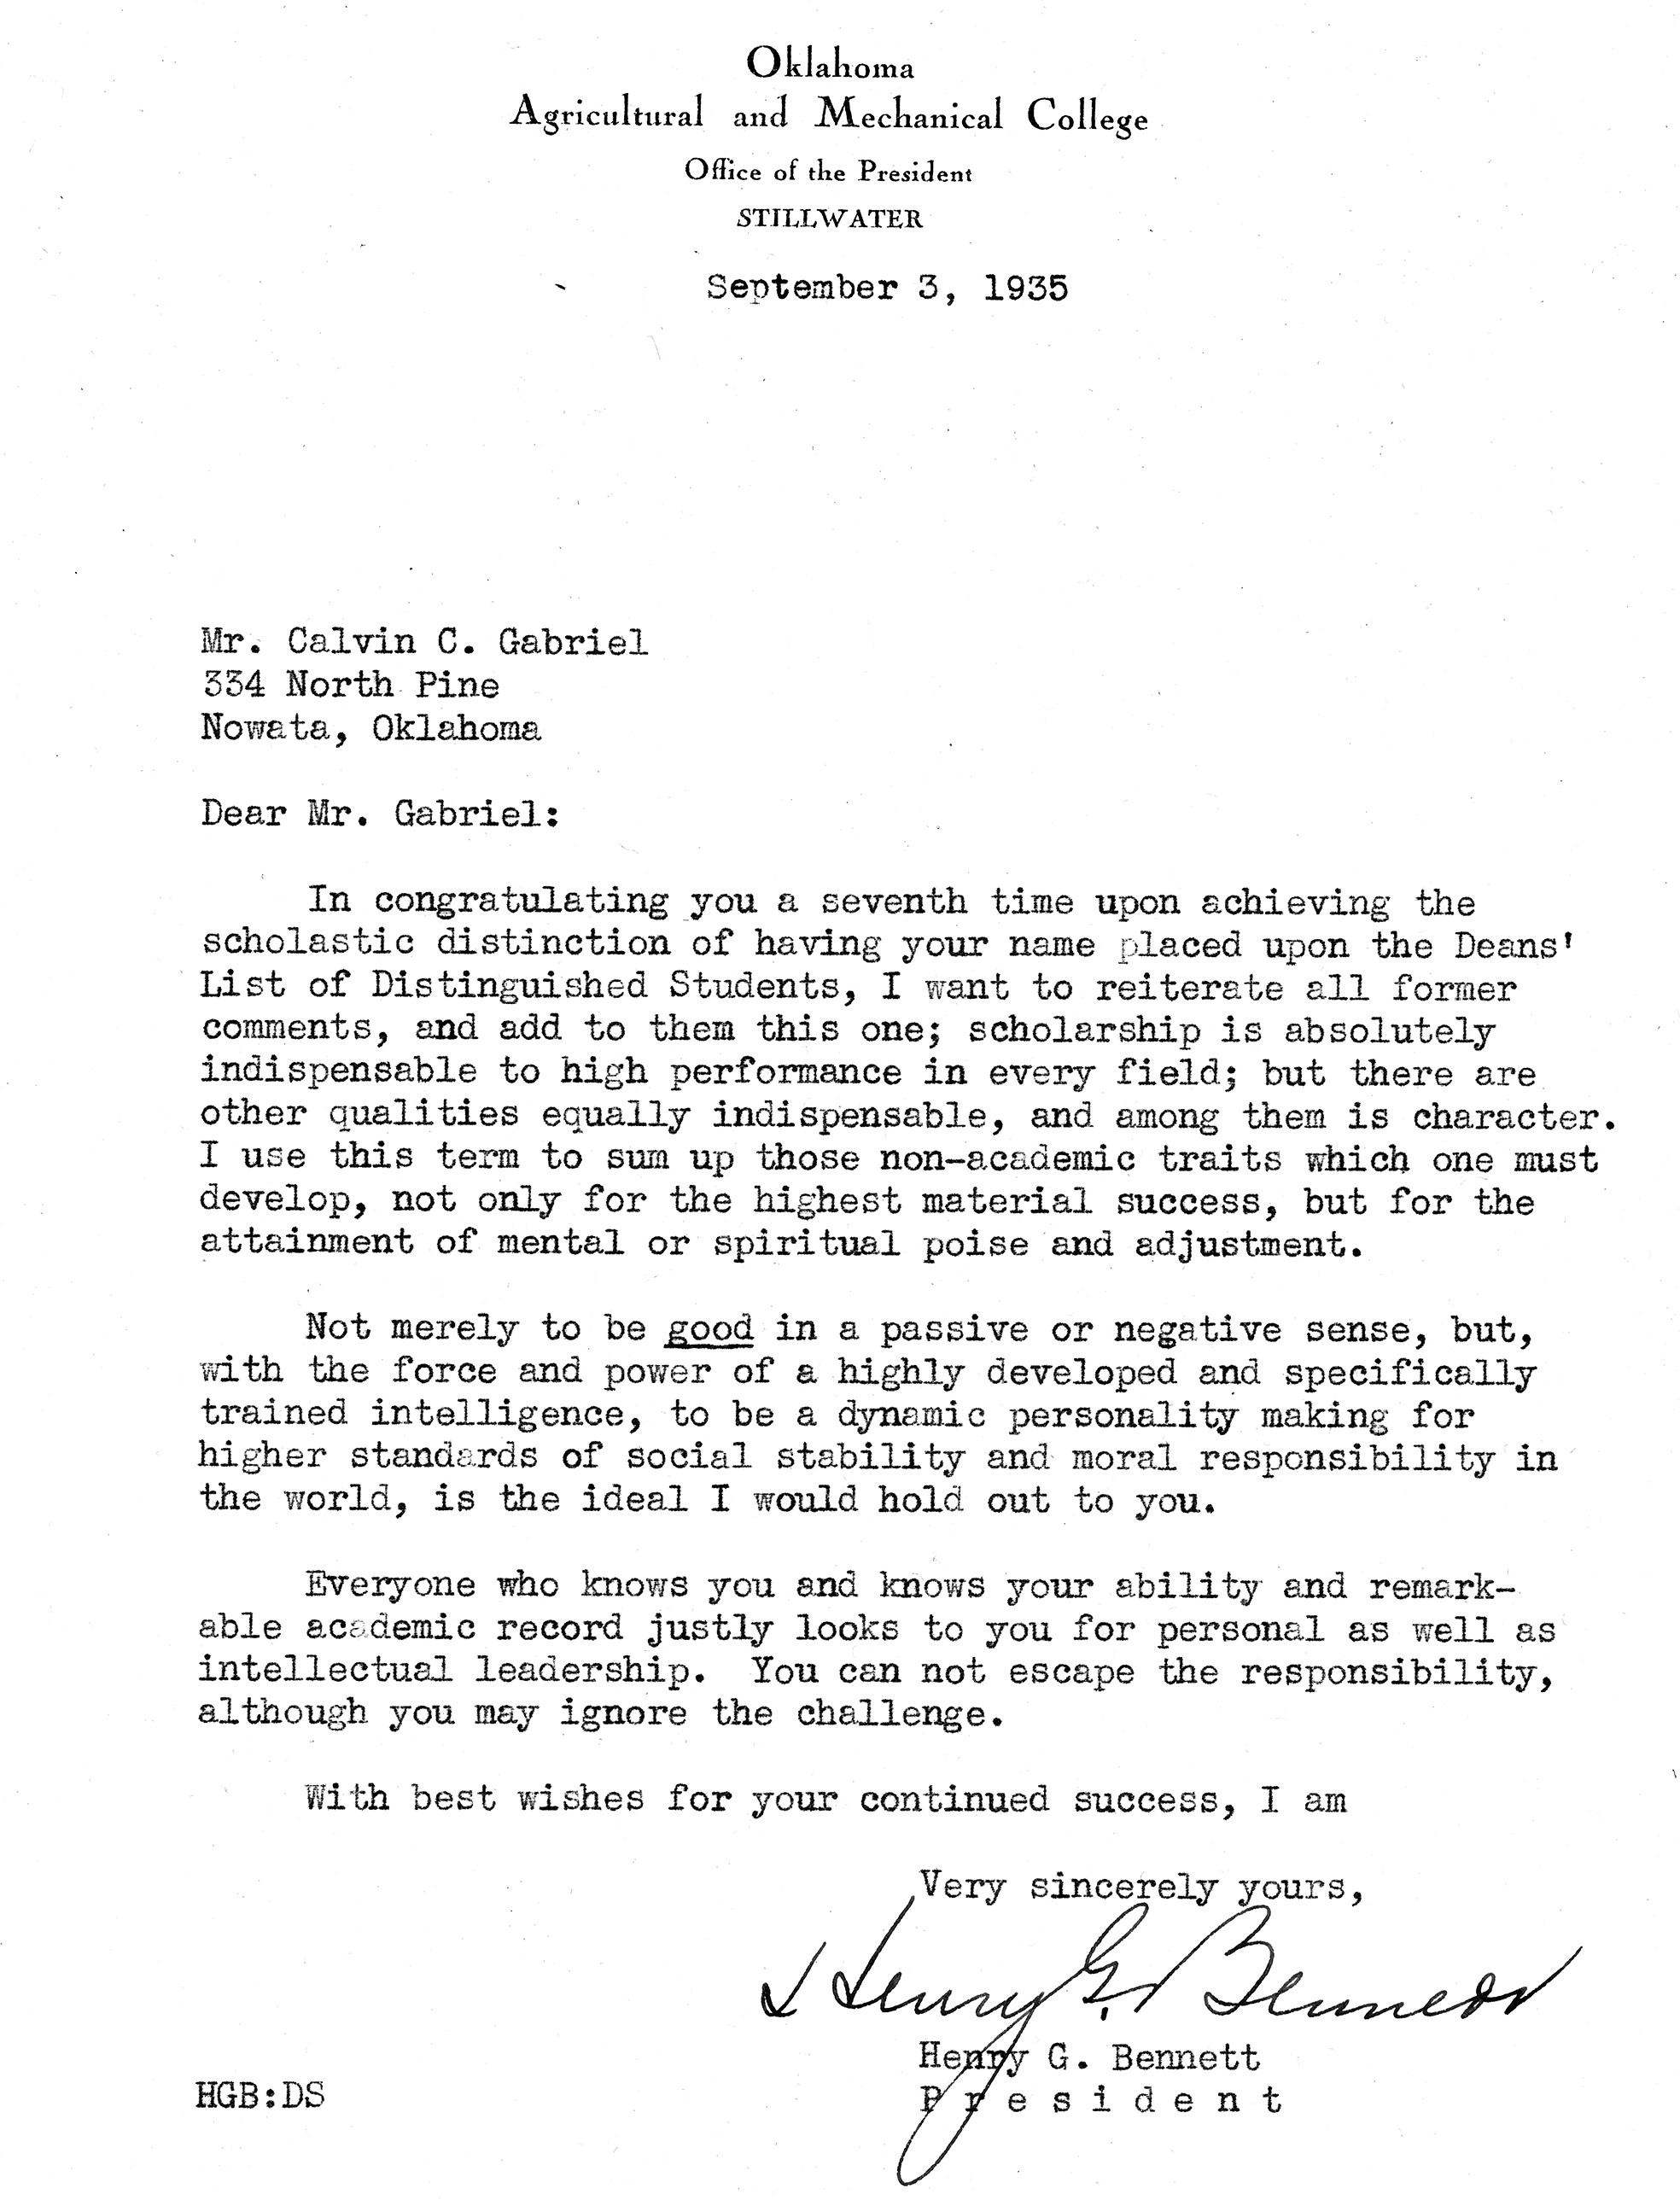 President Bennett Letter to Calvin 1